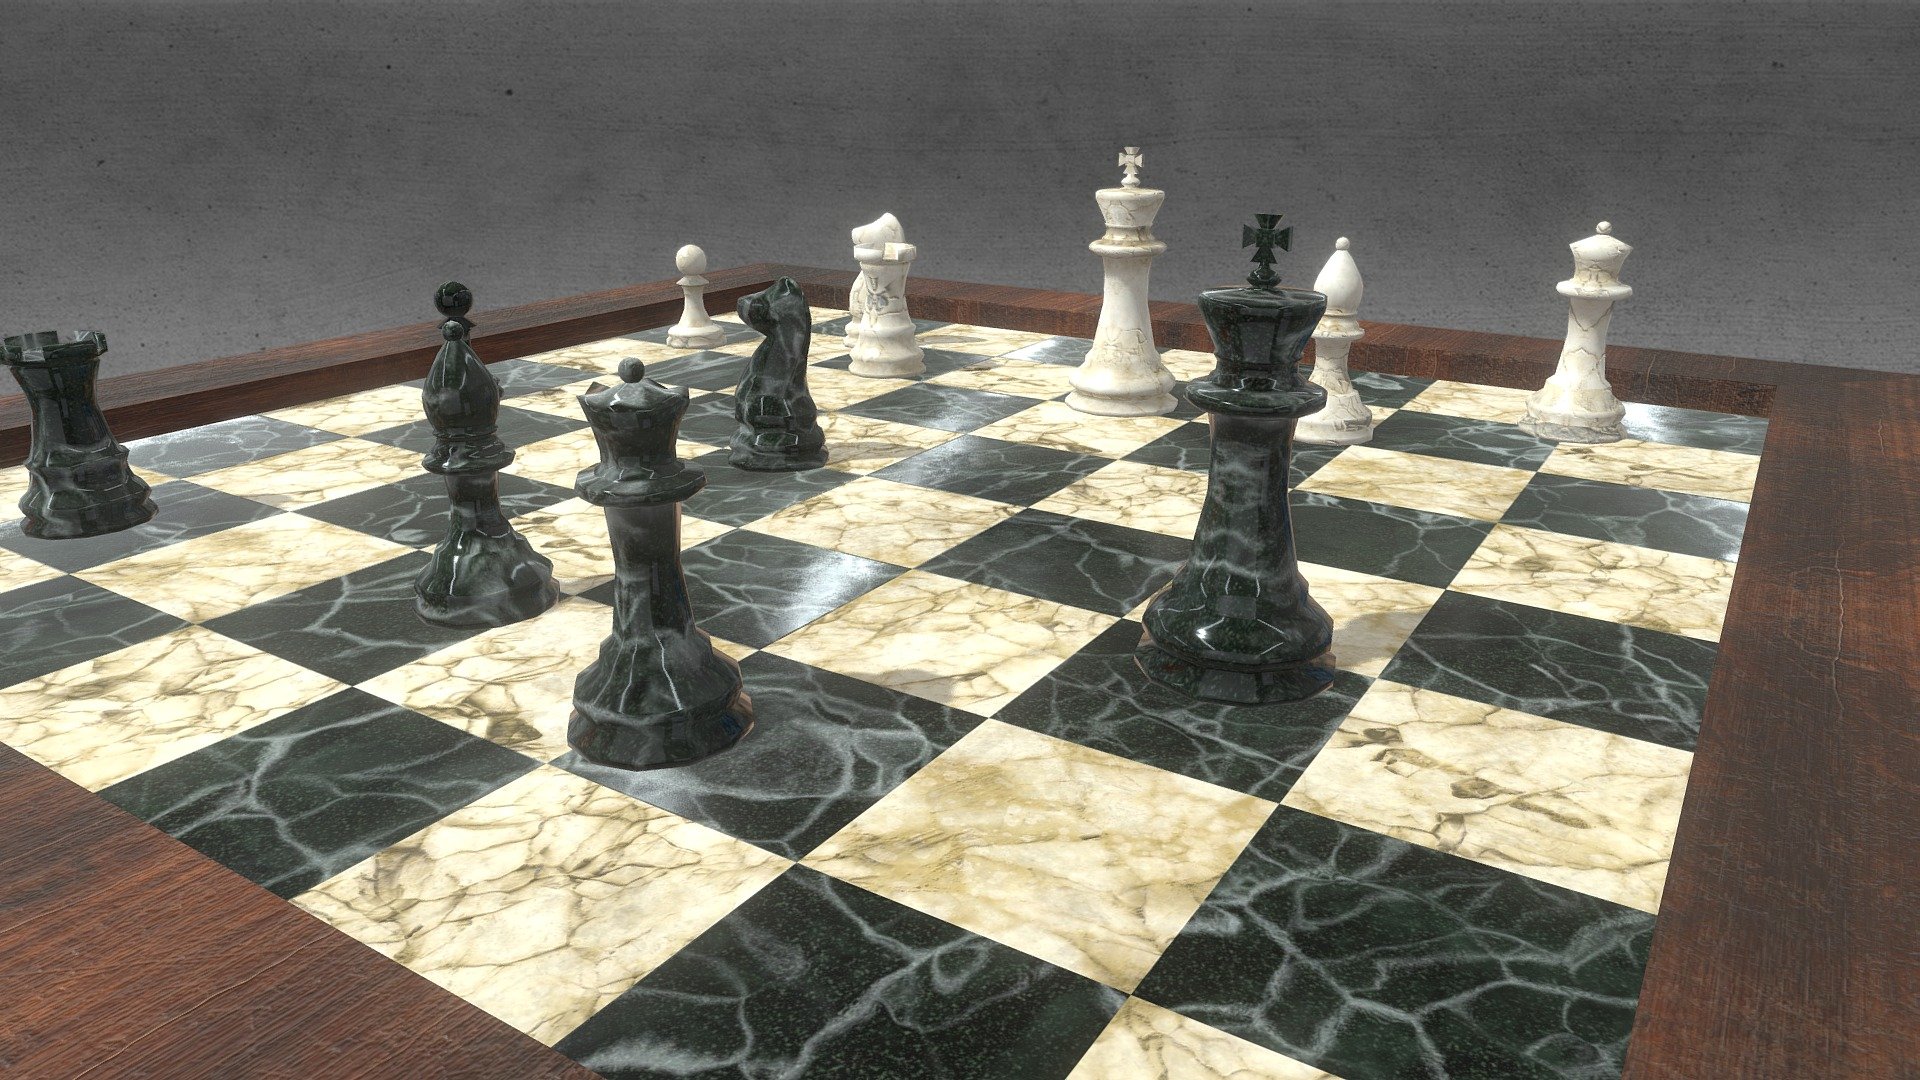 My ArchViz 4K, 360, 512 sampling, 24 FPS:
https://www.youtube.com/watch?v=Zc2Wdo82W6s&amp;t=16s



 - Decorative Chess - Download Free 3D model by Marcin.Kwiatkowski 3d model